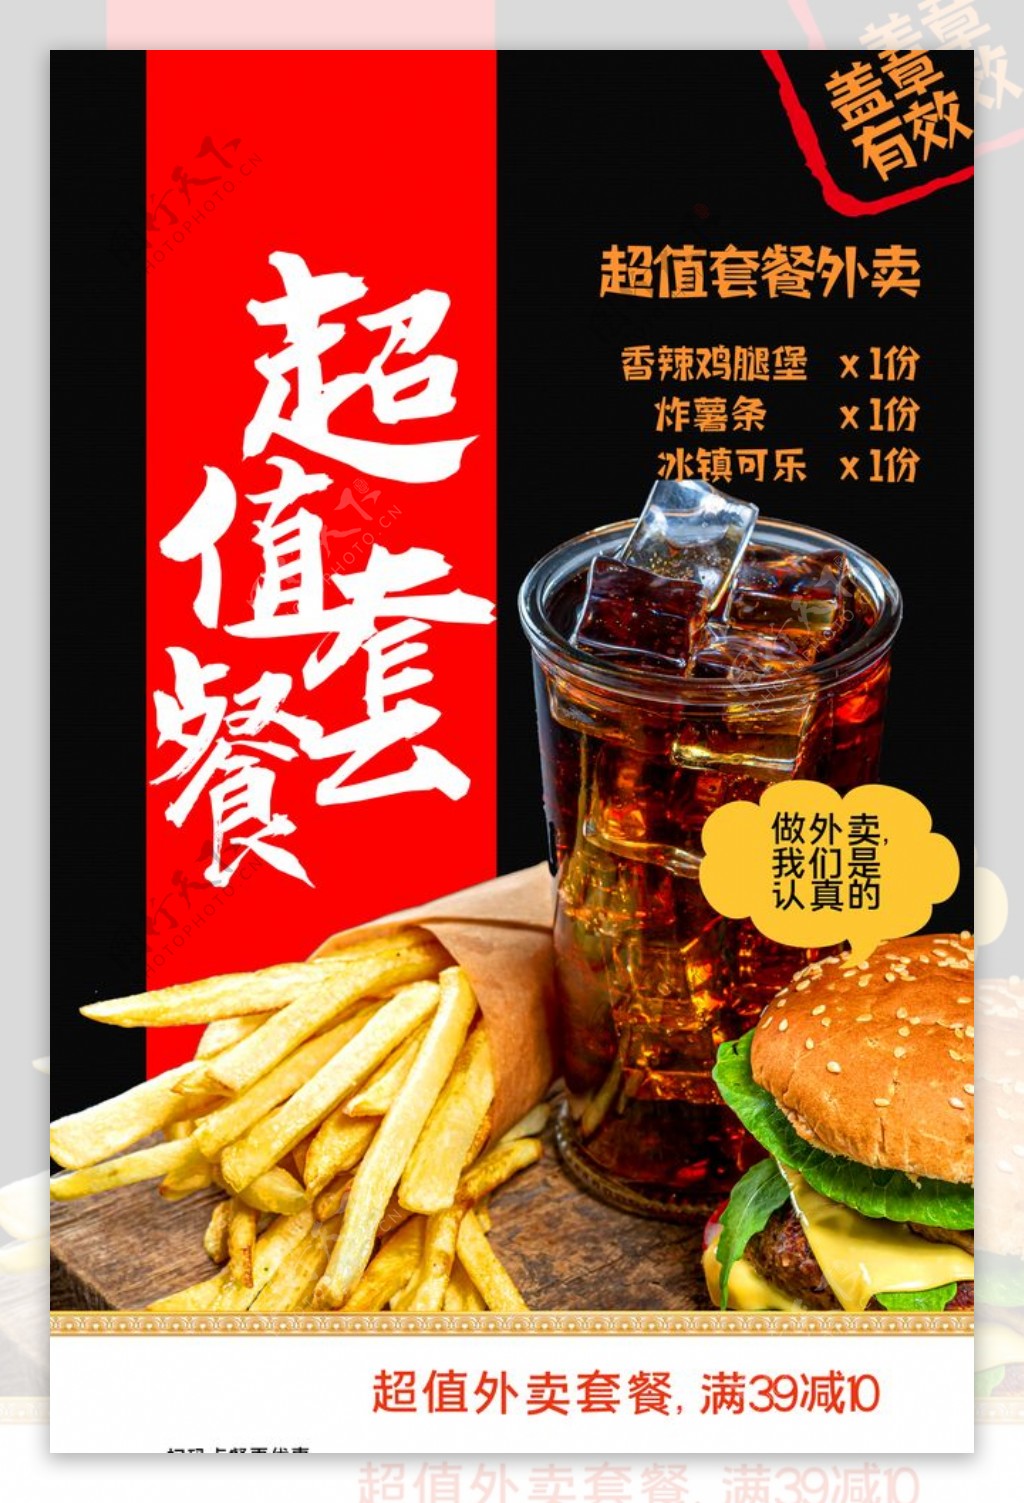 美食套餐促销活动宣传海报